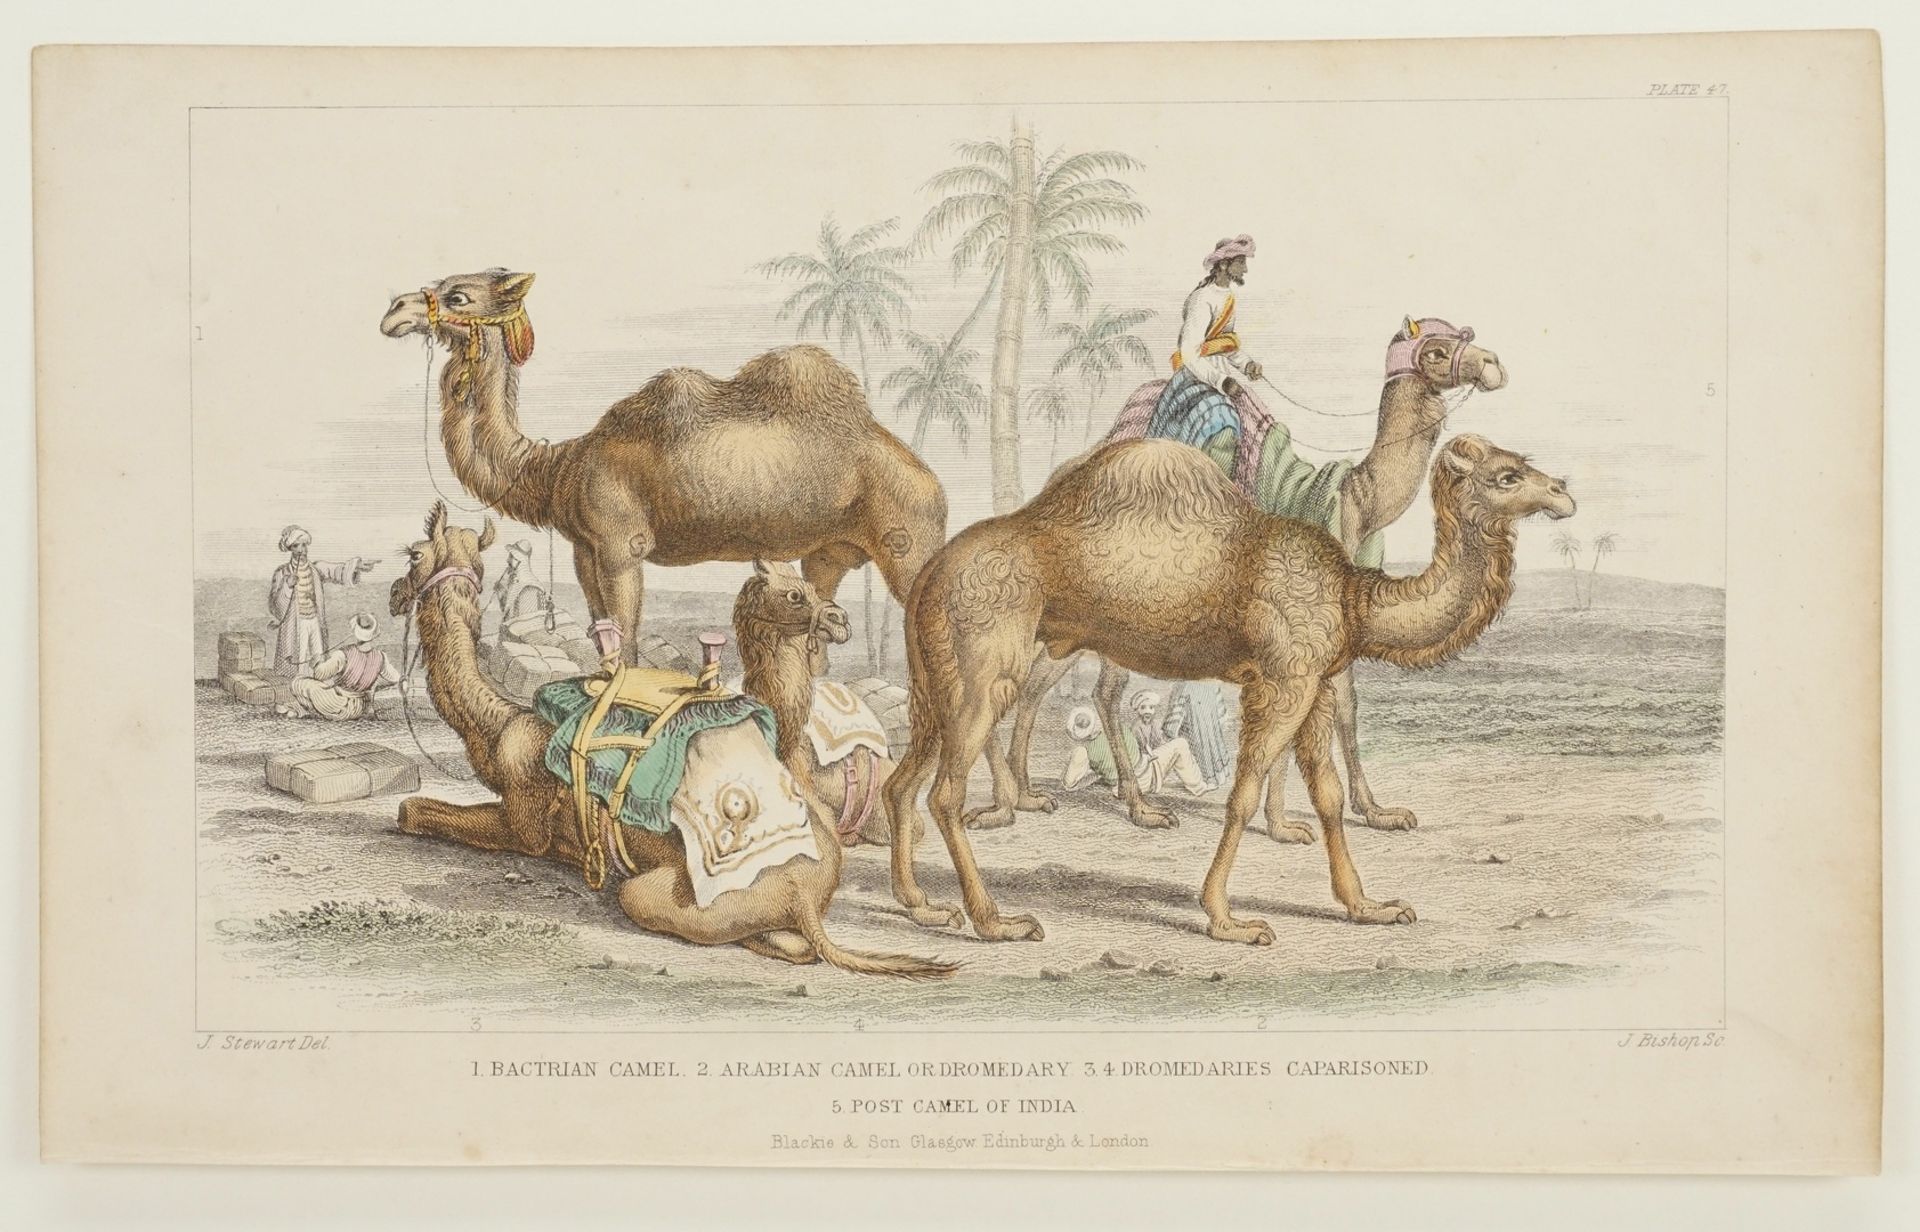 Naturkundliches Blatt zu Kamelen - Image 3 of 3